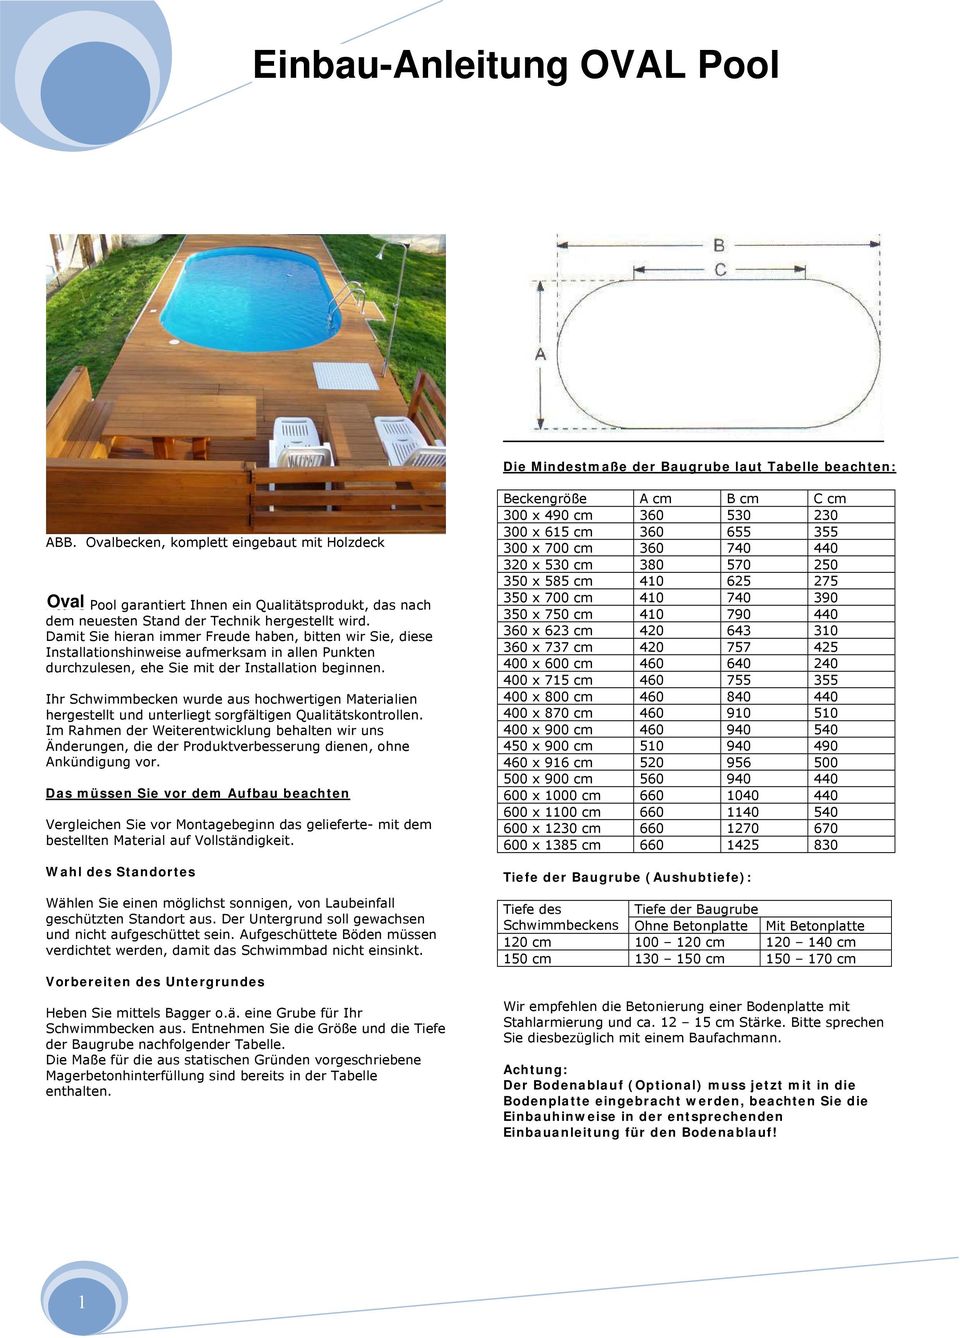 Oval Active Pool garantiert Ihnen ein Qualitätsprodukt, das nach dem neuesten Stand der Technik hergestellt wird.